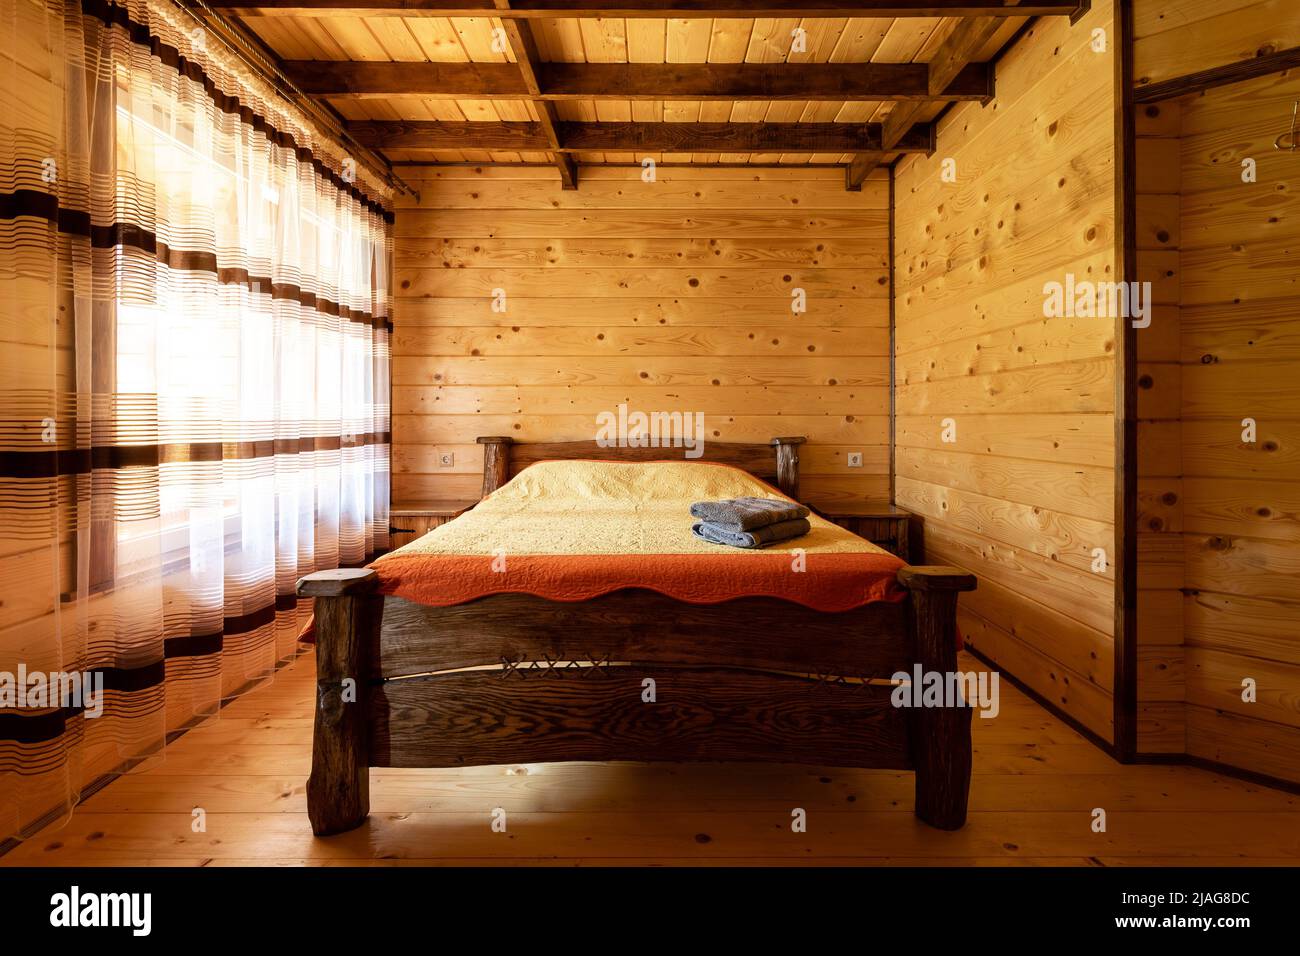 Rustikales Holzbett in einem gemütlichen Cottage Zimmer mit einem  Doppelbett, Nachttisch, Decken und Handtücher Stockfotografie - Alamy